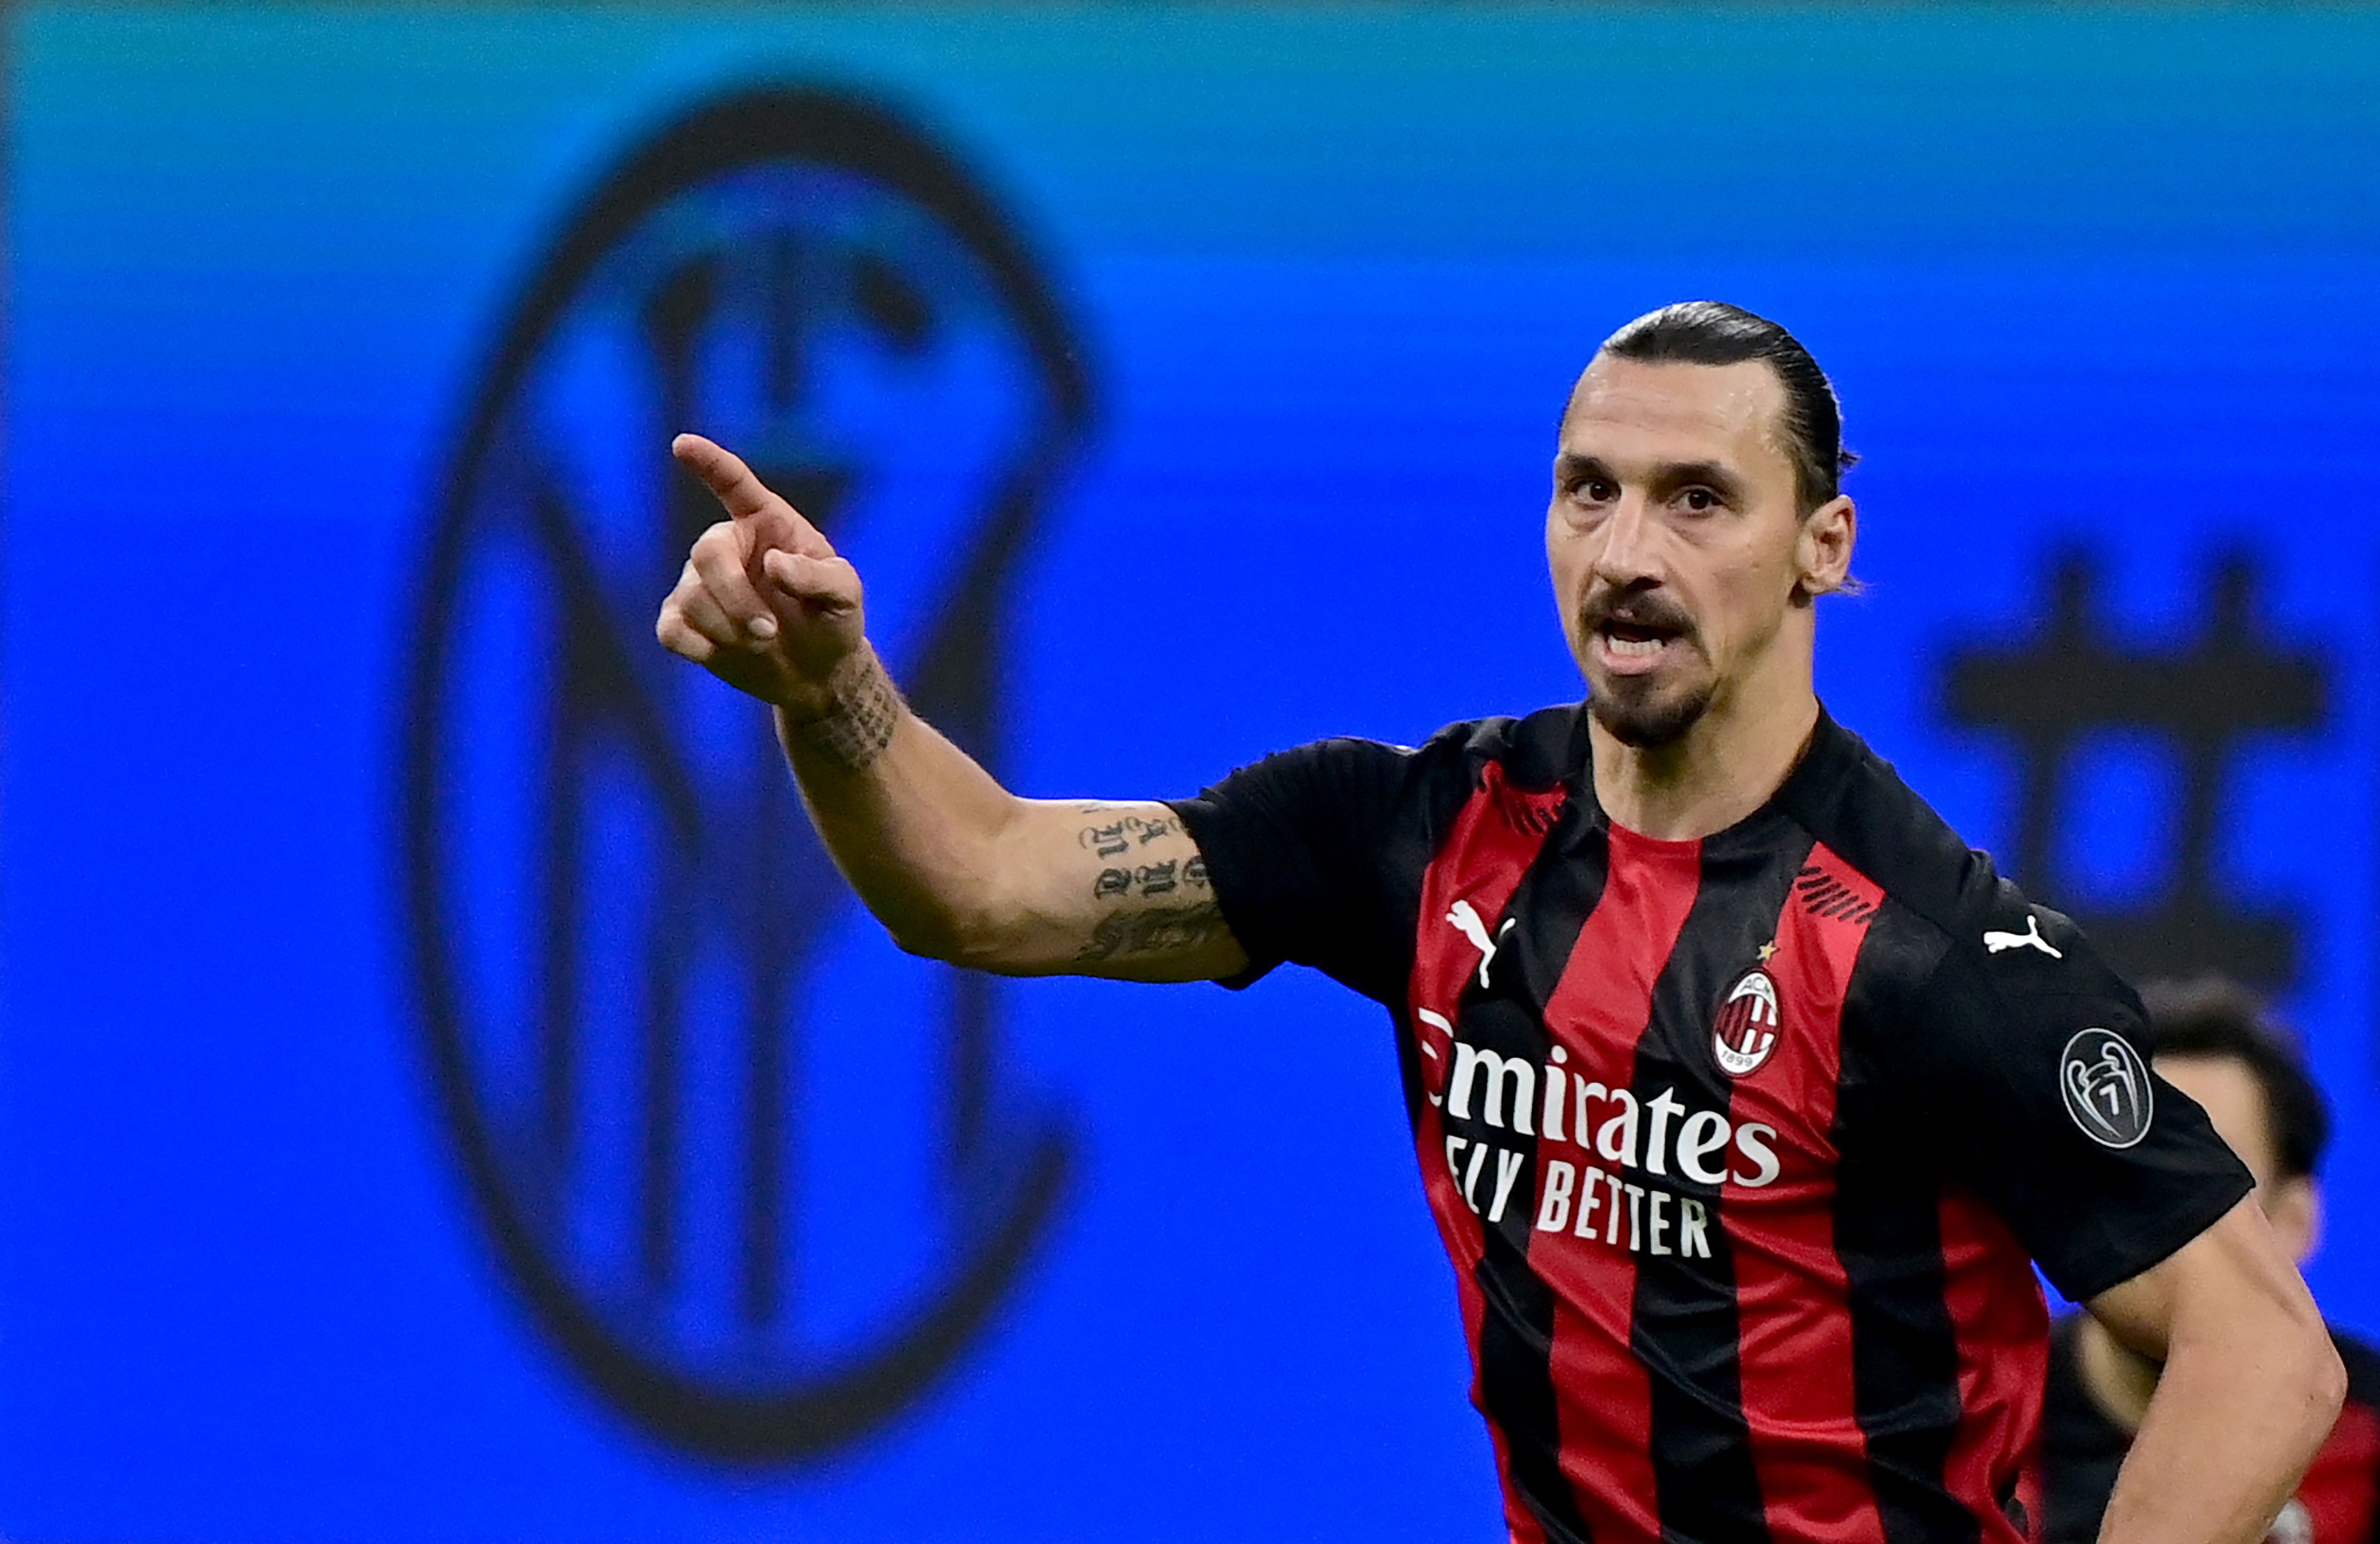 El sueco Zlatan Ibrahimovic anotó un doblete en el triunfo del AC Milan sobre el Inter de Milán, esto luego de haberse perdido dos jornadas por haber contraído covid-19. (Foto Prensa Libre: AFP)